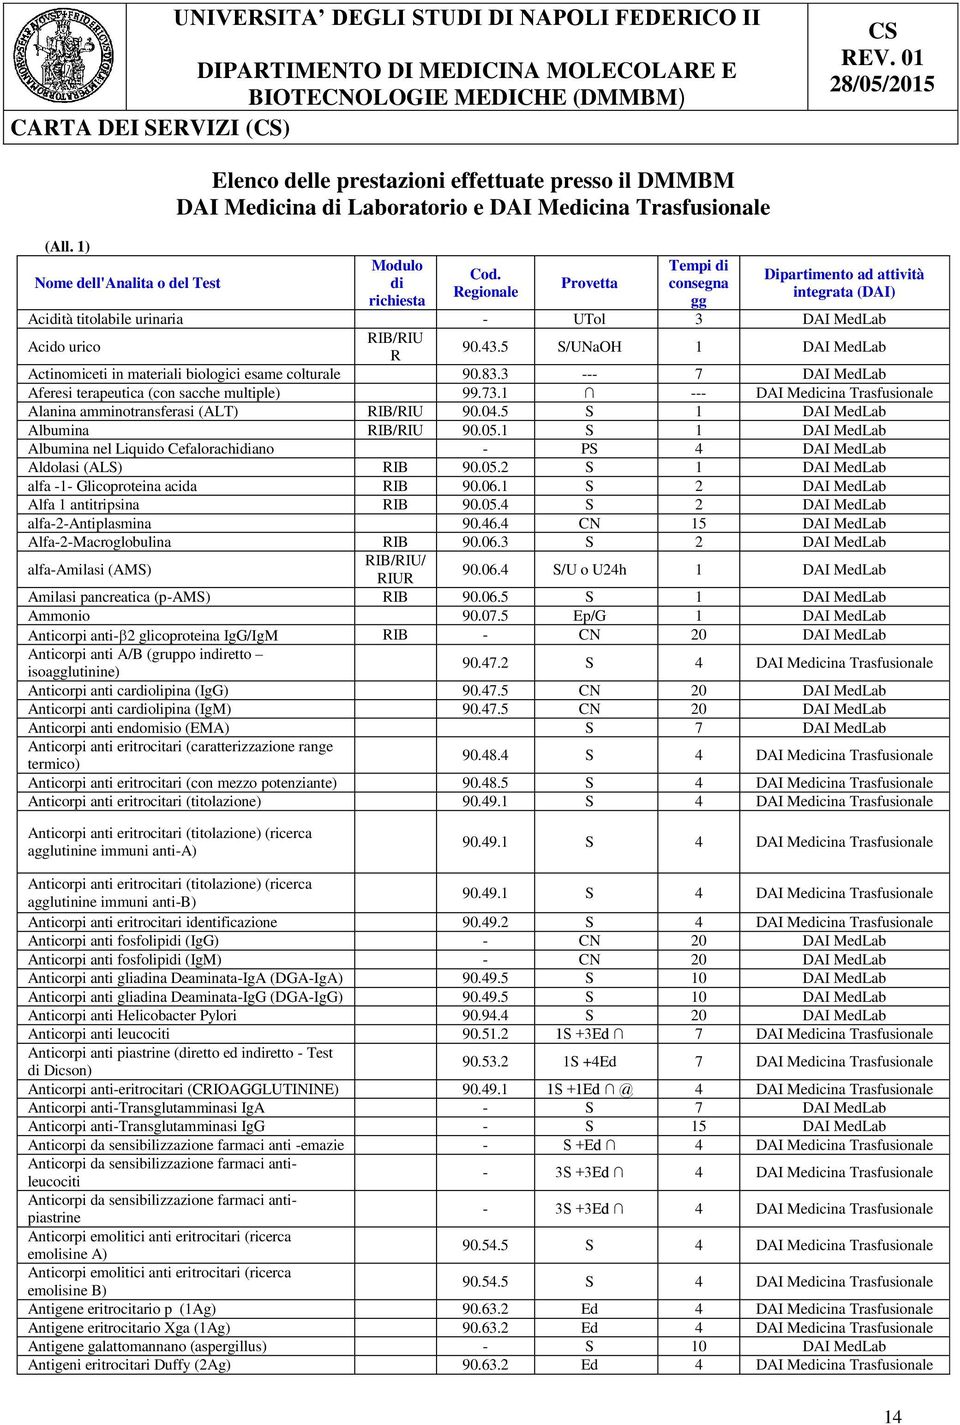 5 S/UNaOH 1 DAI MedLab Actinomiceti in materiali biologici esame colturale 90.83.3 --- 7 DAI MedLab Aferesi terapeutica (con sacche multiple) 99.73.